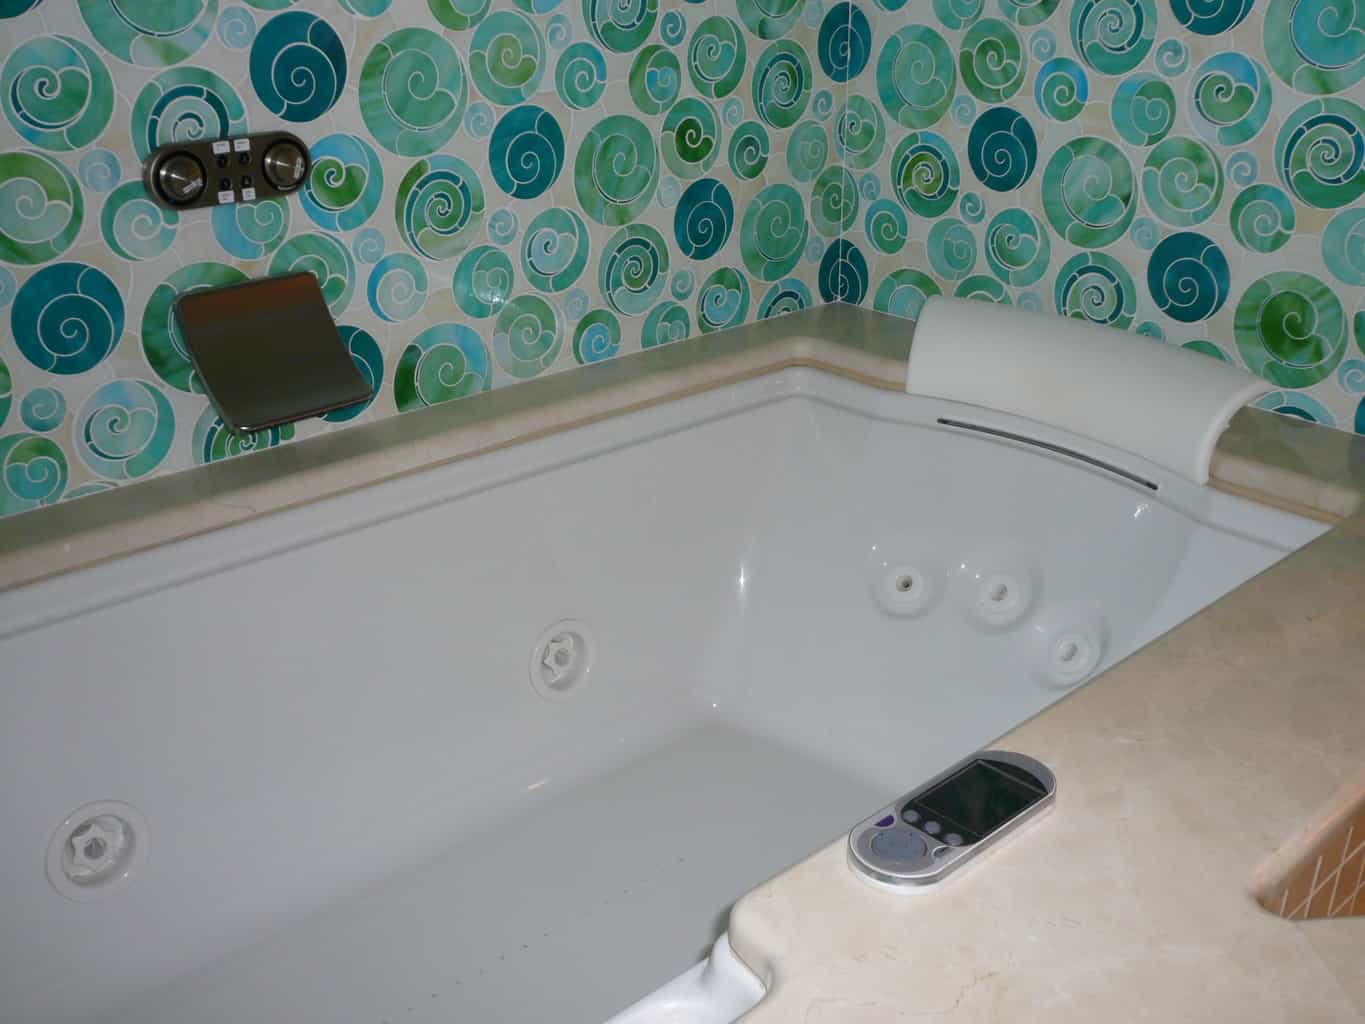 Bathroom remodeling salem oregon - cypress homes salem oregon